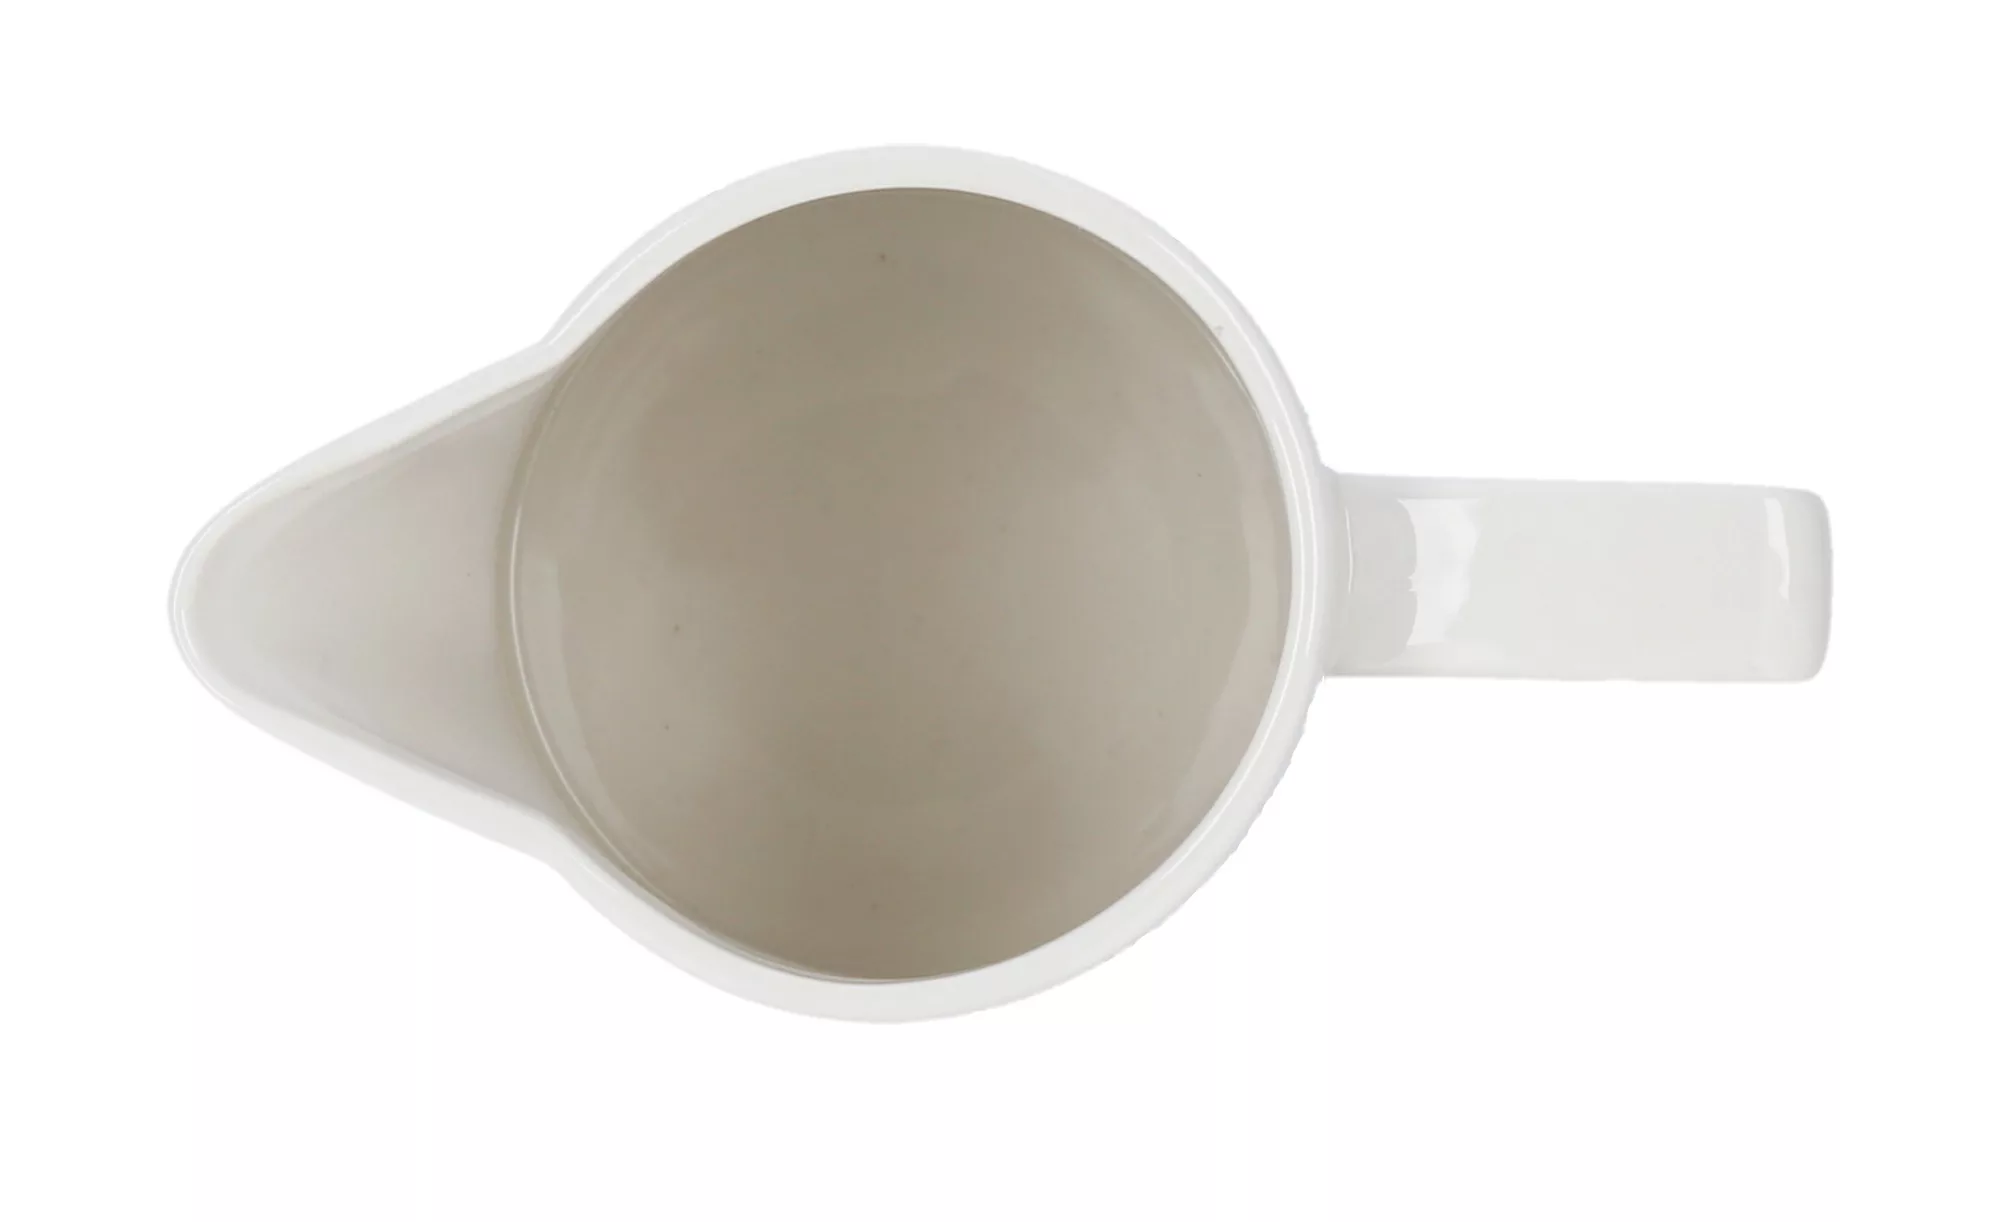 KHG Krug - weiß - Porzellan - 9,5 cm - 17 cm - Sconto günstig online kaufen